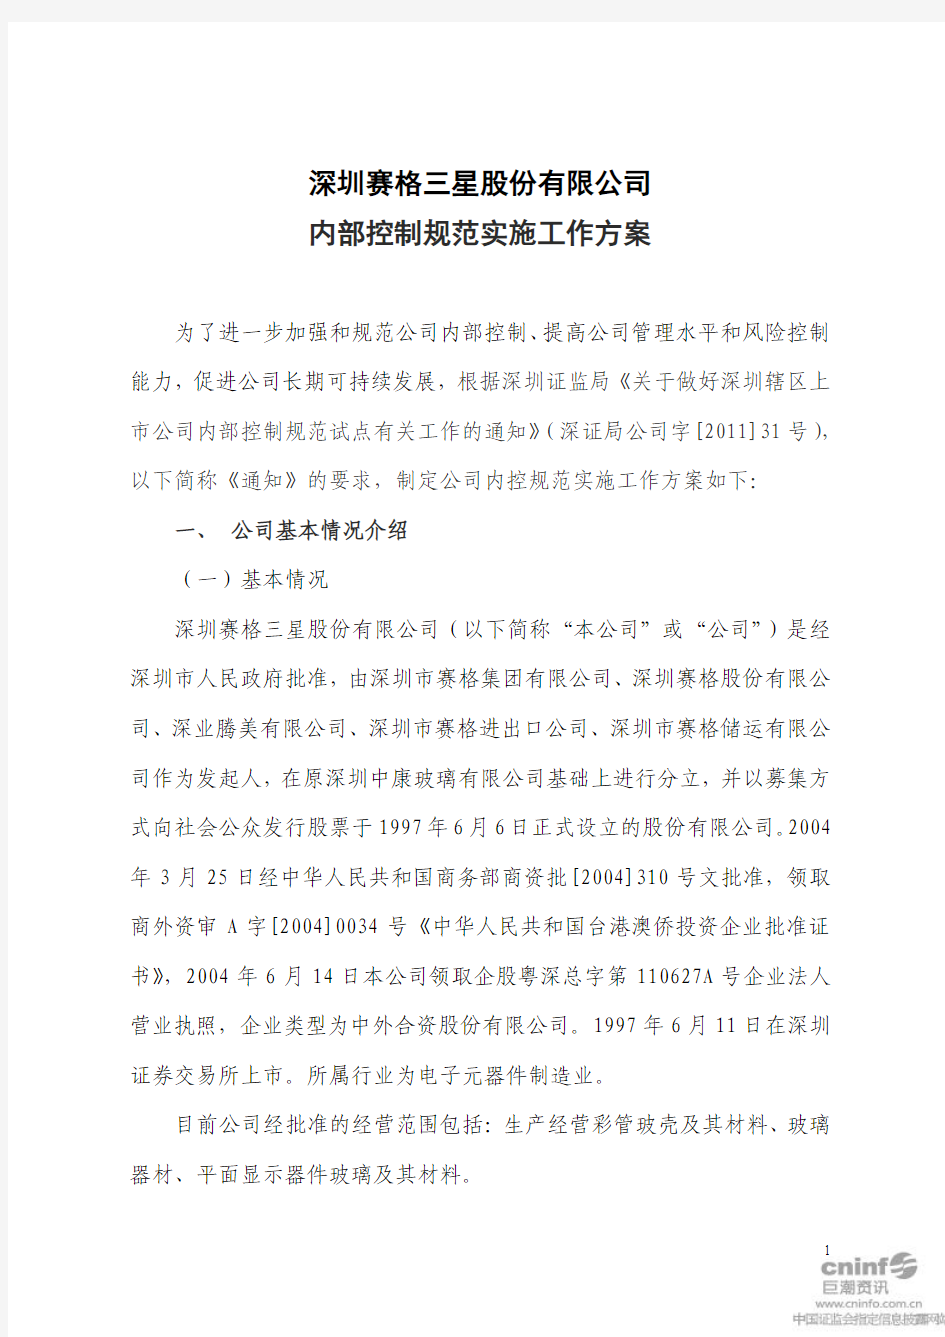 深圳赛格三星股份有限公司内部控制规范实施工作方案